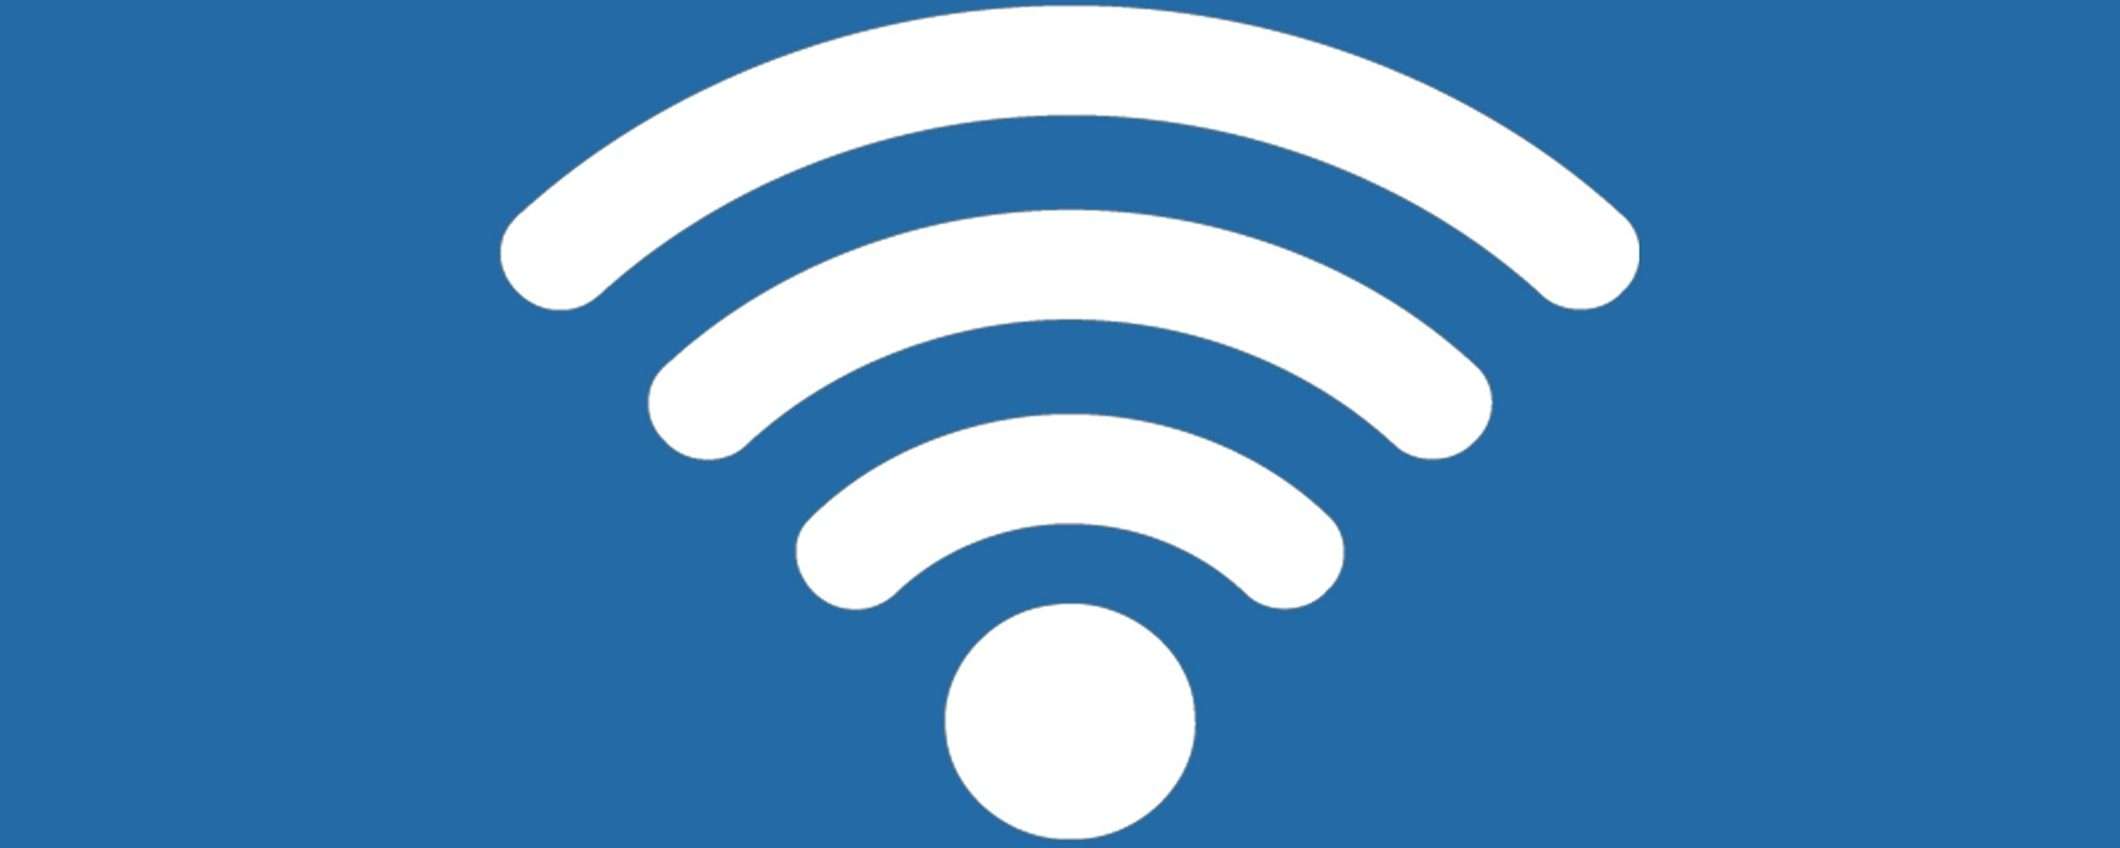 Wi-Fi 7 in arrivo: connessioni più veloci e stabili